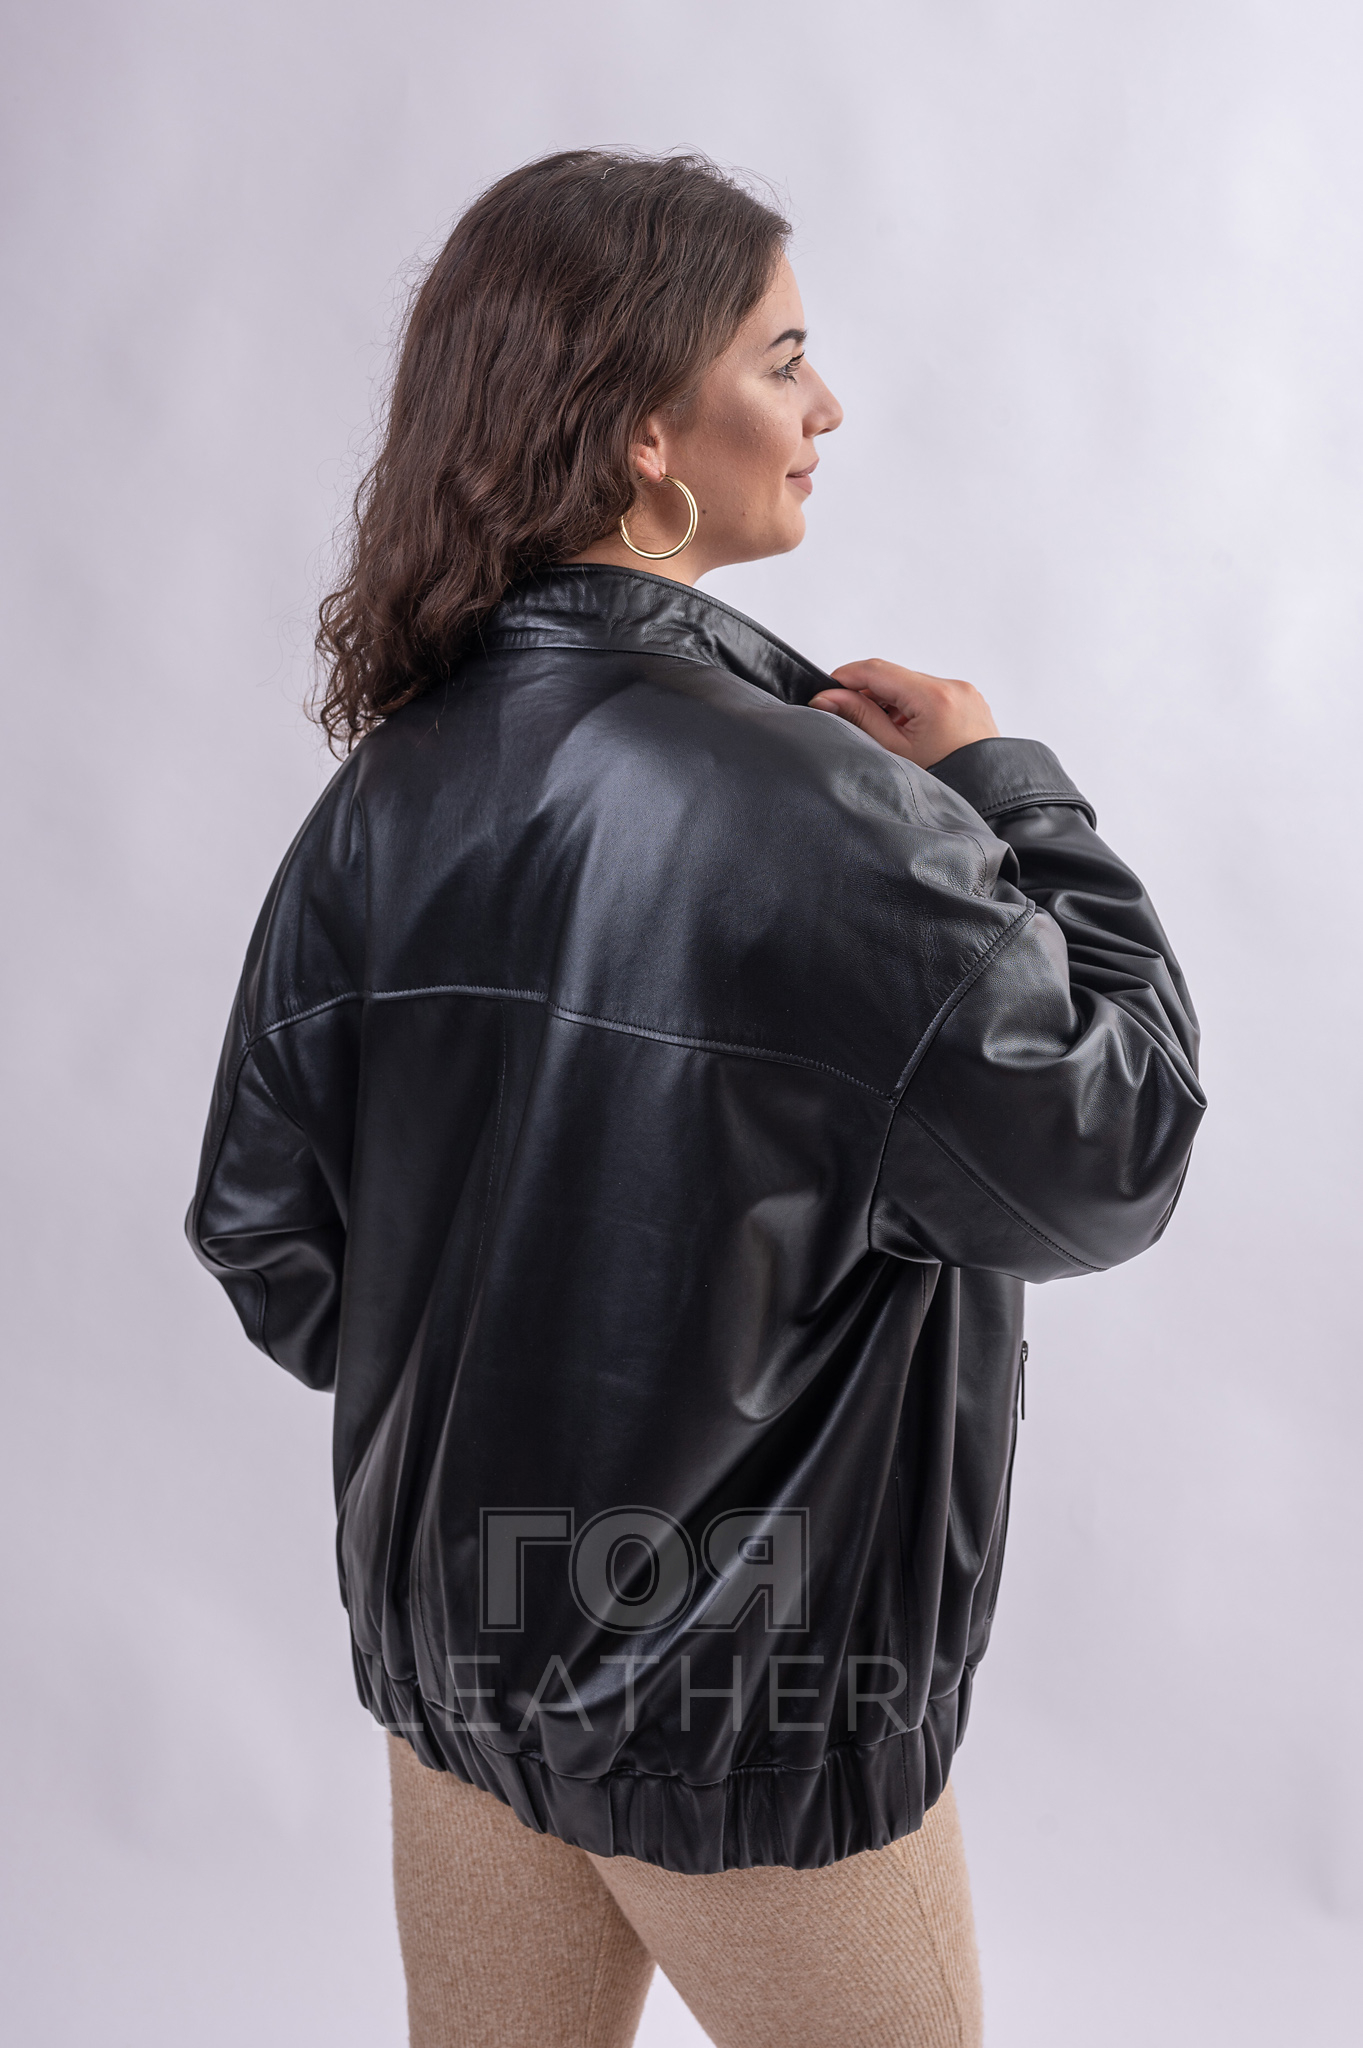 Модерно дамско кожено яке в стил овърсайз. Нов модел в колекцията на ГОЯ Leather. Моделът е с кожен ластик широк 6 см. в долната част. Разполага с три външни джобове, затворени с ципове. Кройката е изключително удобна и комфортна.